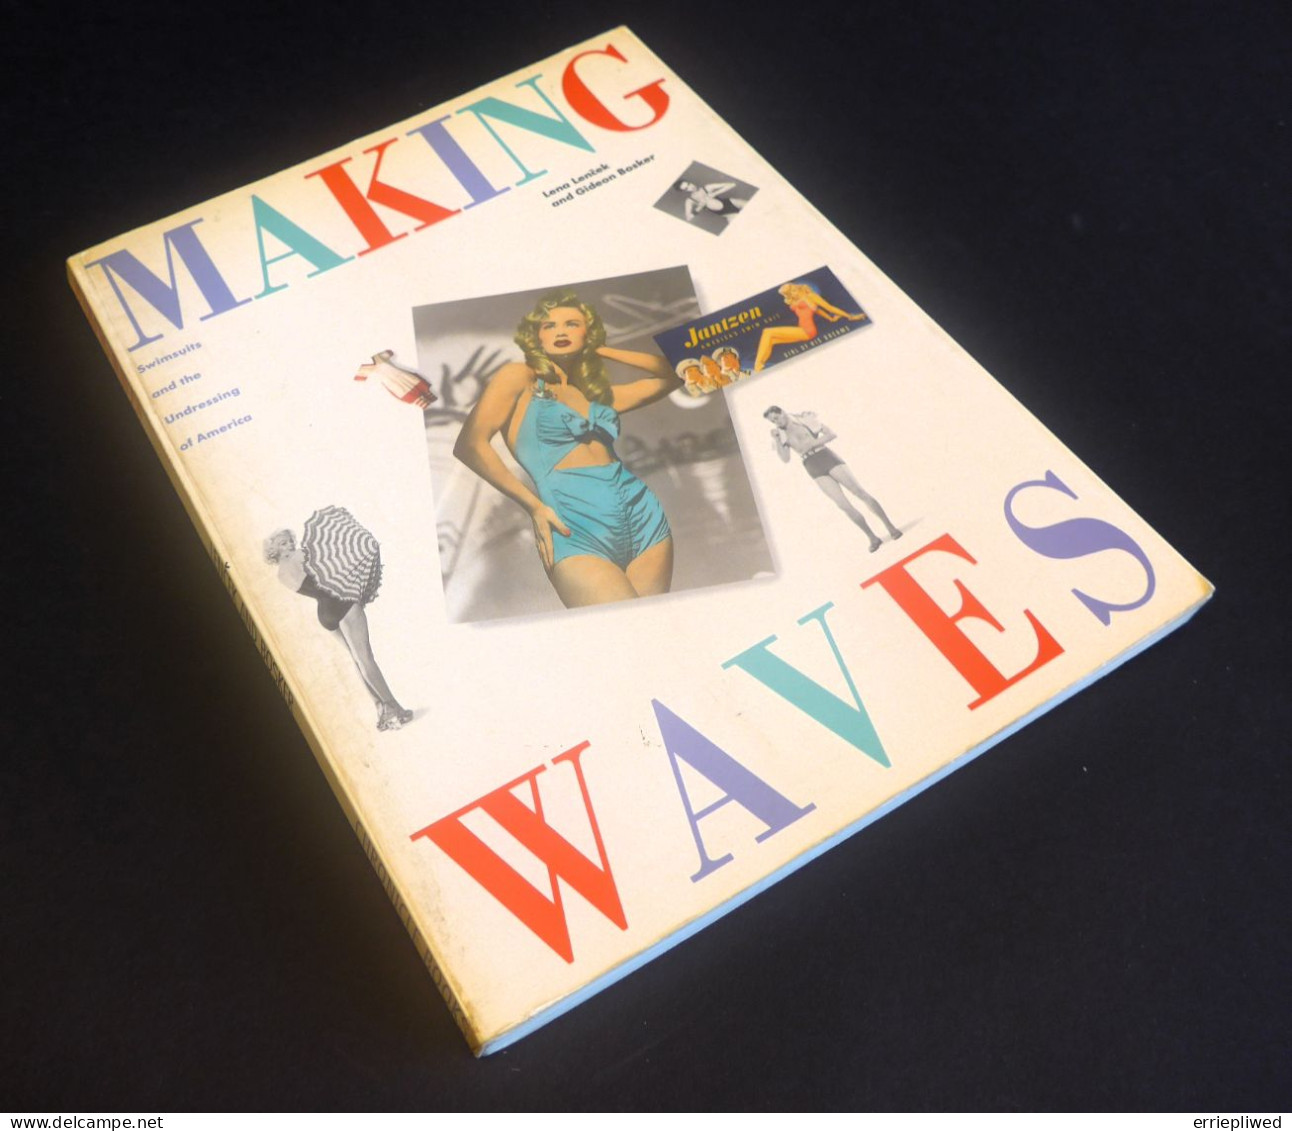 Making Waves 1988